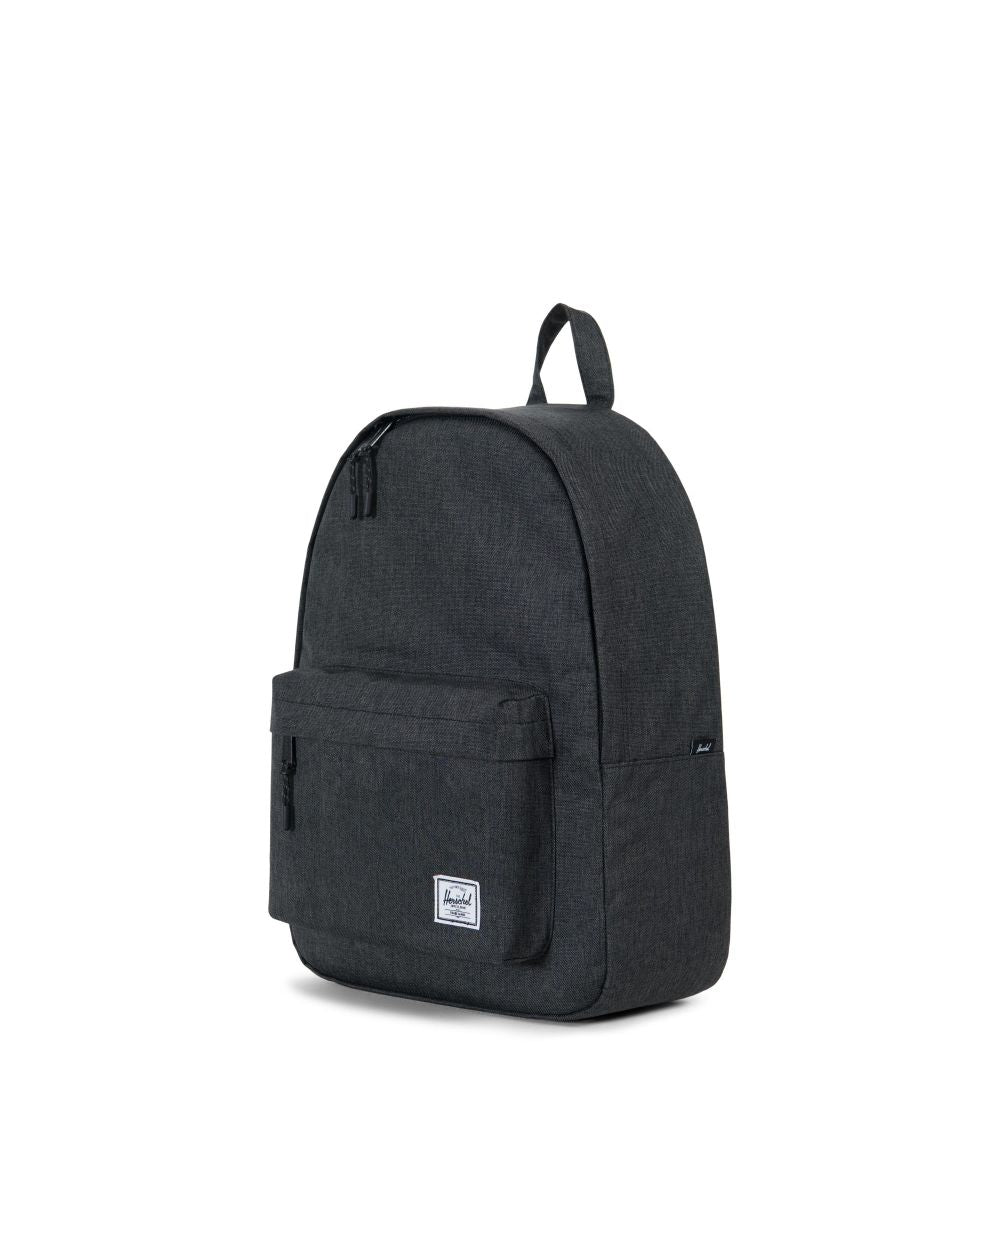 Herschel Supply Co. - Classic Backpack, Black Crosshatch